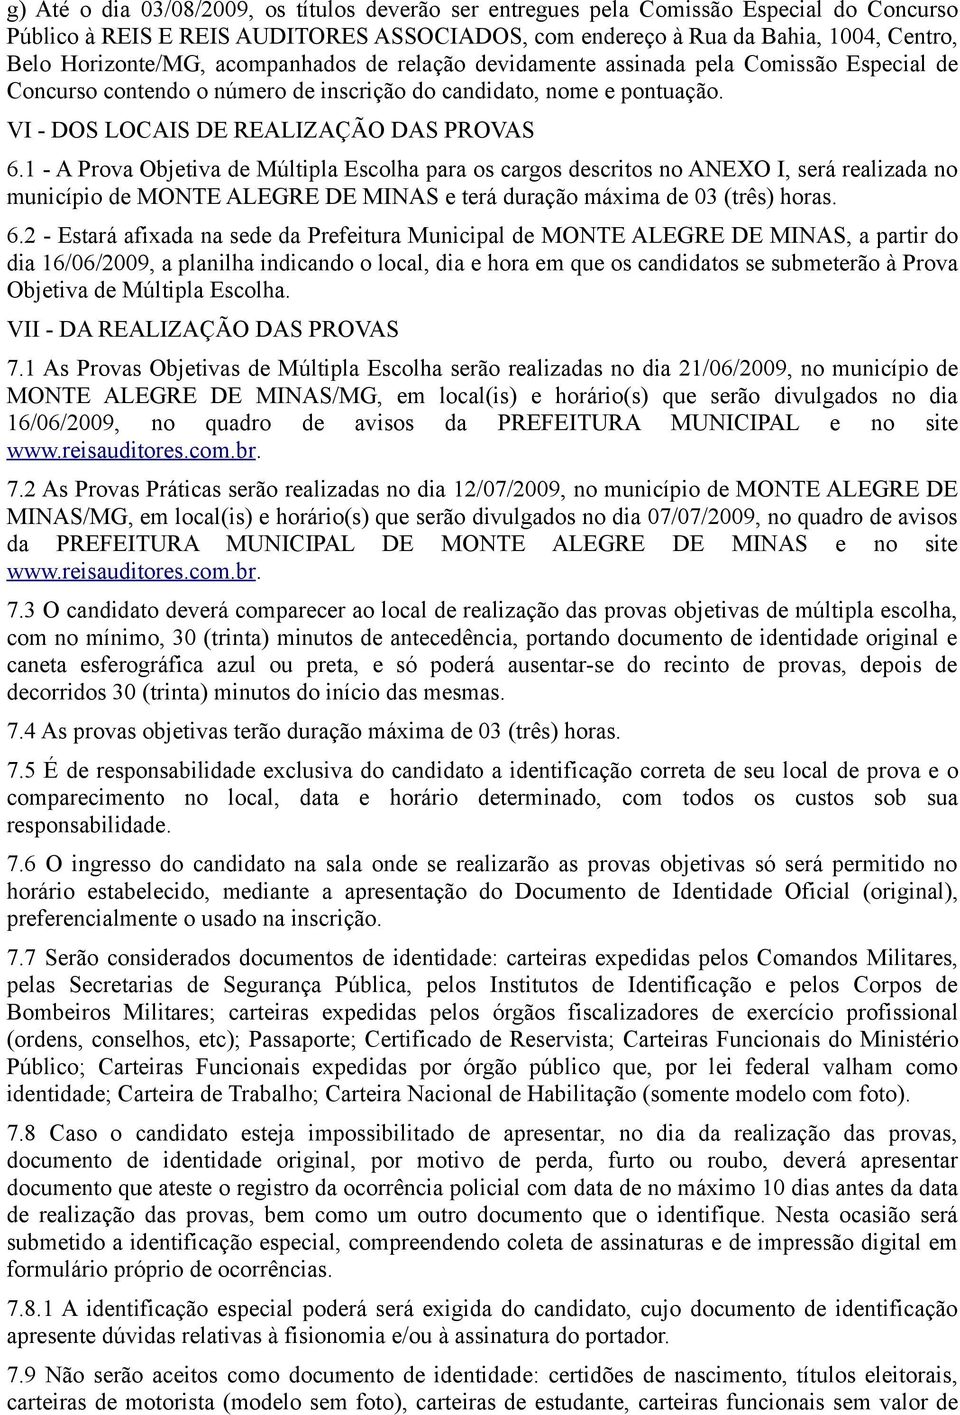 1 - A Prova Objetiva de Múltipla Escolha para os cargos descritos no ANEXO I, será realizada no município de MONTE ALEGRE DE MINAS e terá duração máxima de 03 (três) horas. 6.